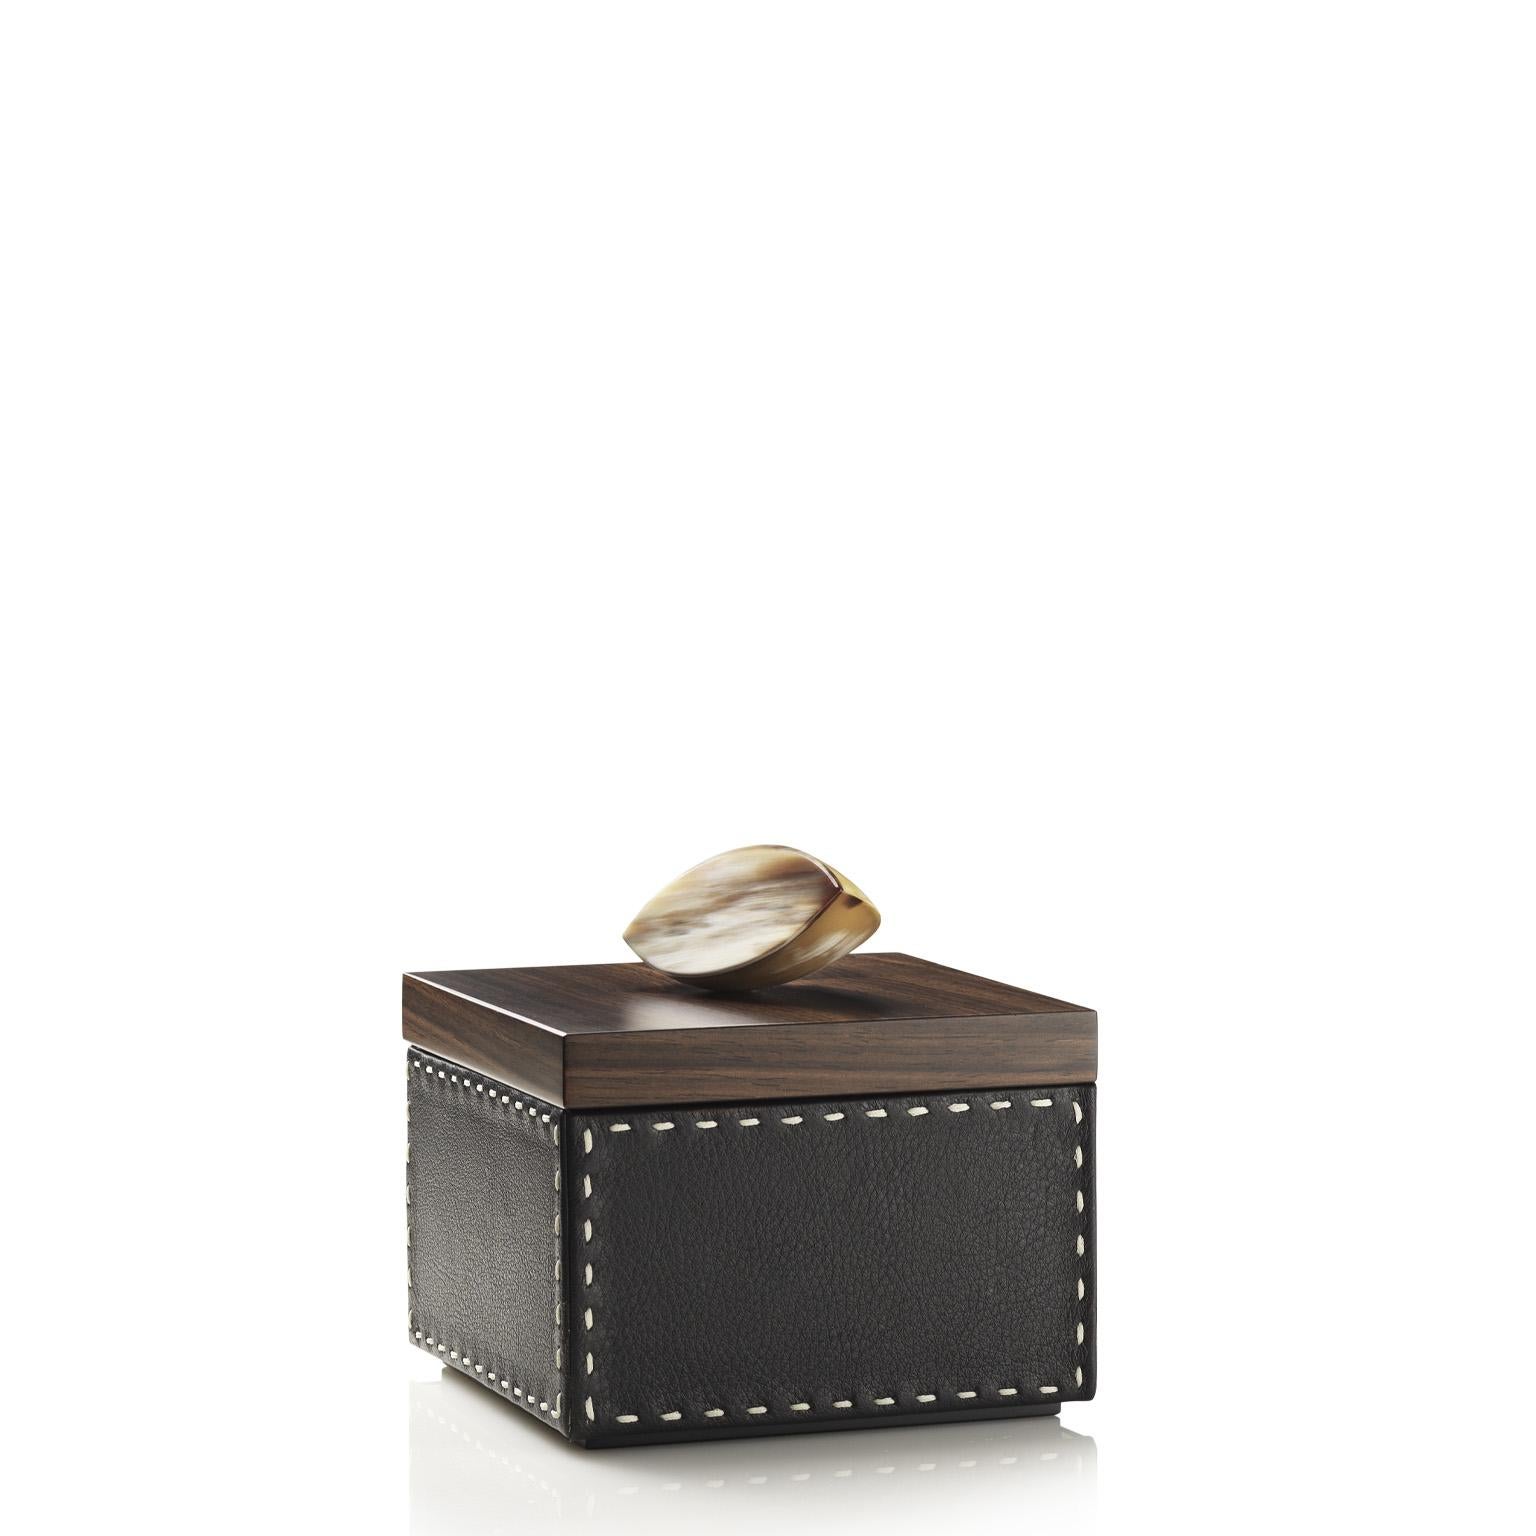 Capricia Square Box in Pebbled leather with Handle in Corno Italiano, Mod. 4476 In New Condition For Sale In Recanati, Macerata